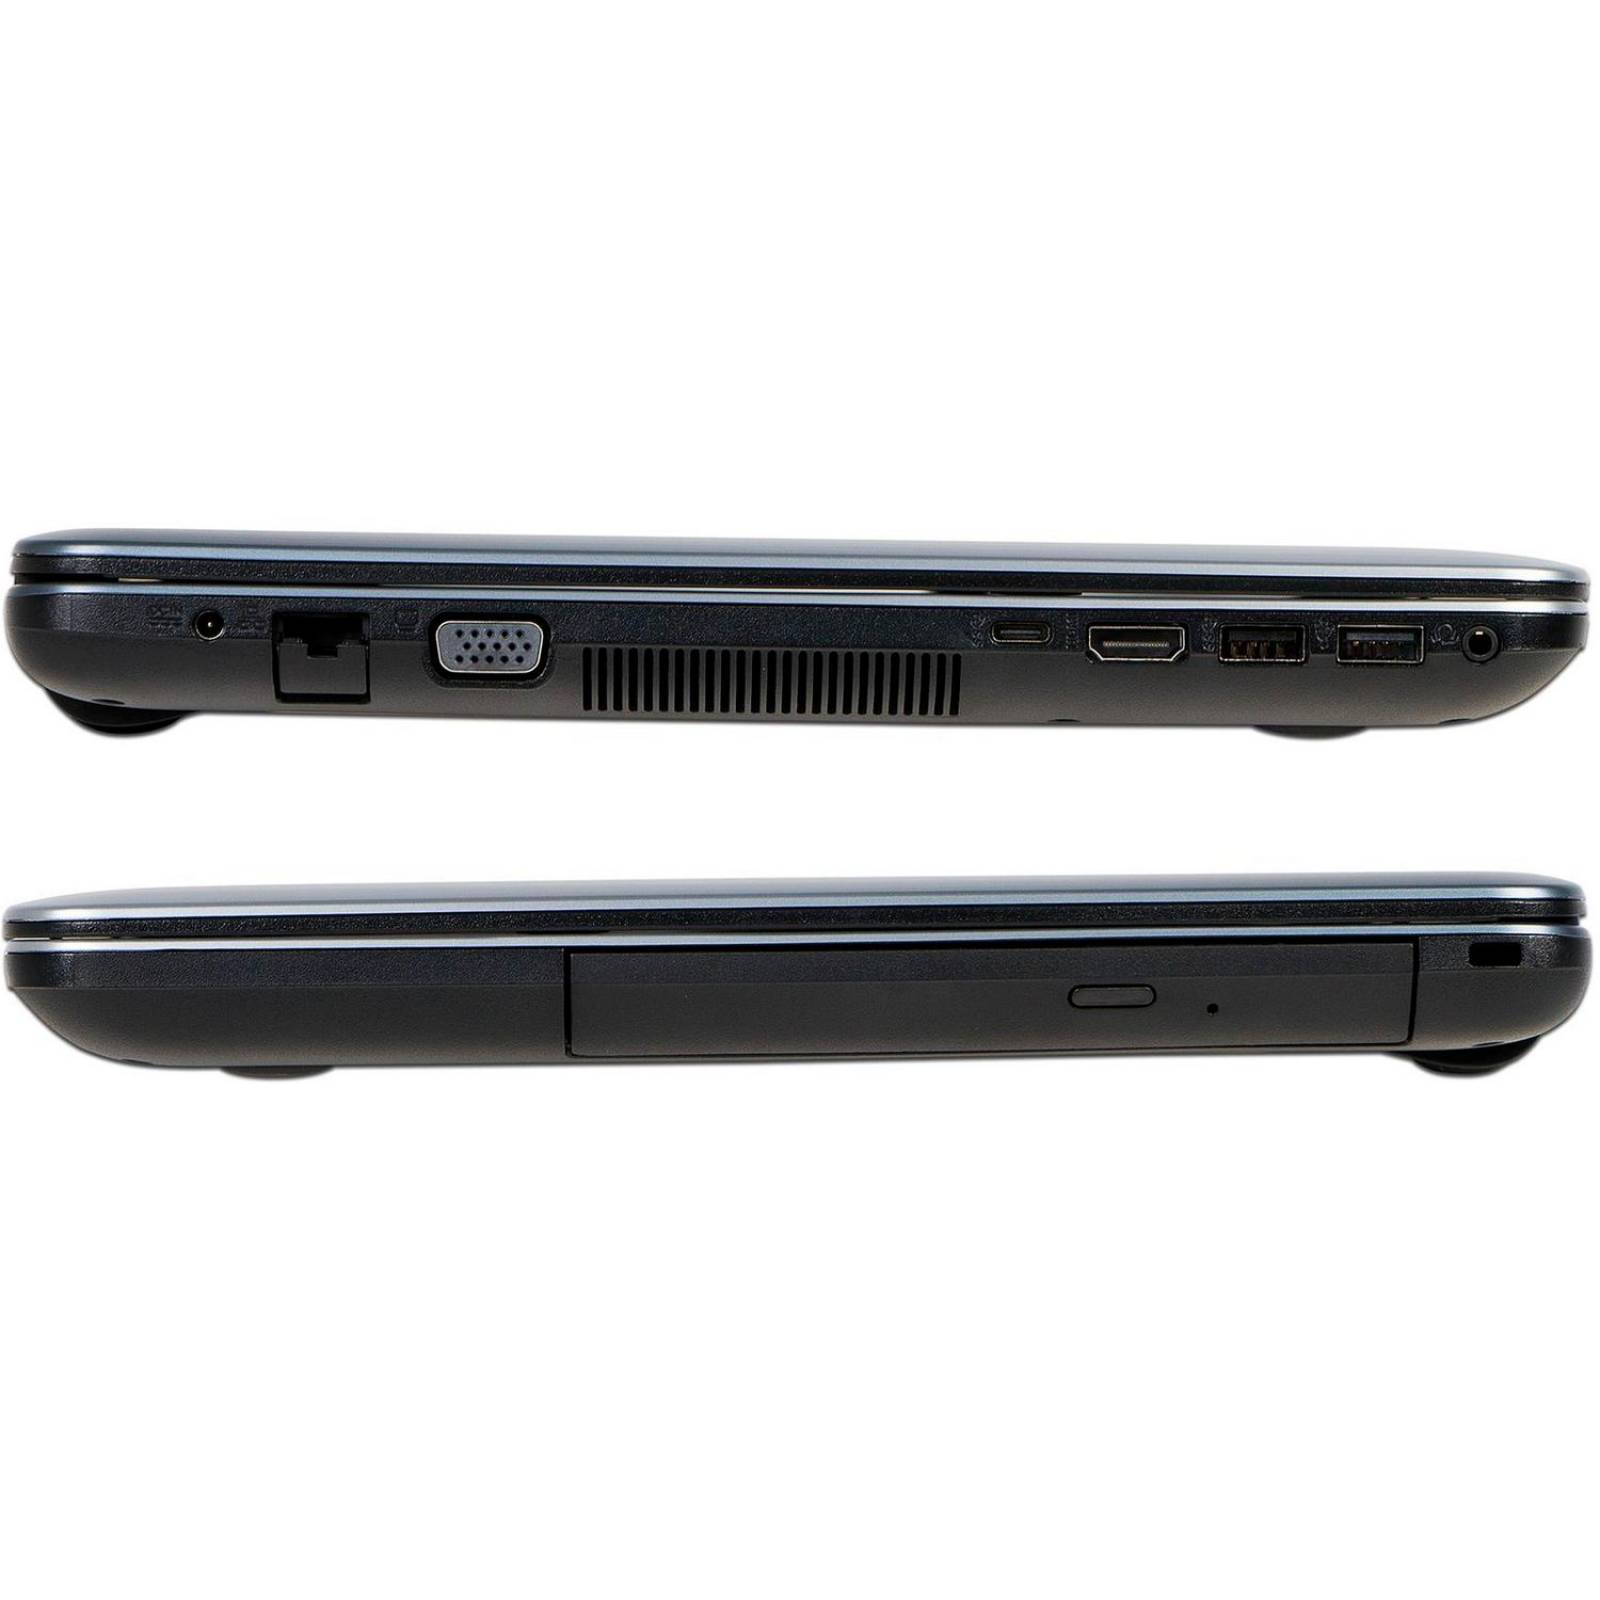 Laptop ASUS ViviBook Max X441UA I3 6006U 4Gb 1TB 14 Win10 Silver X441UA-WX086T  ReAcondicionado 